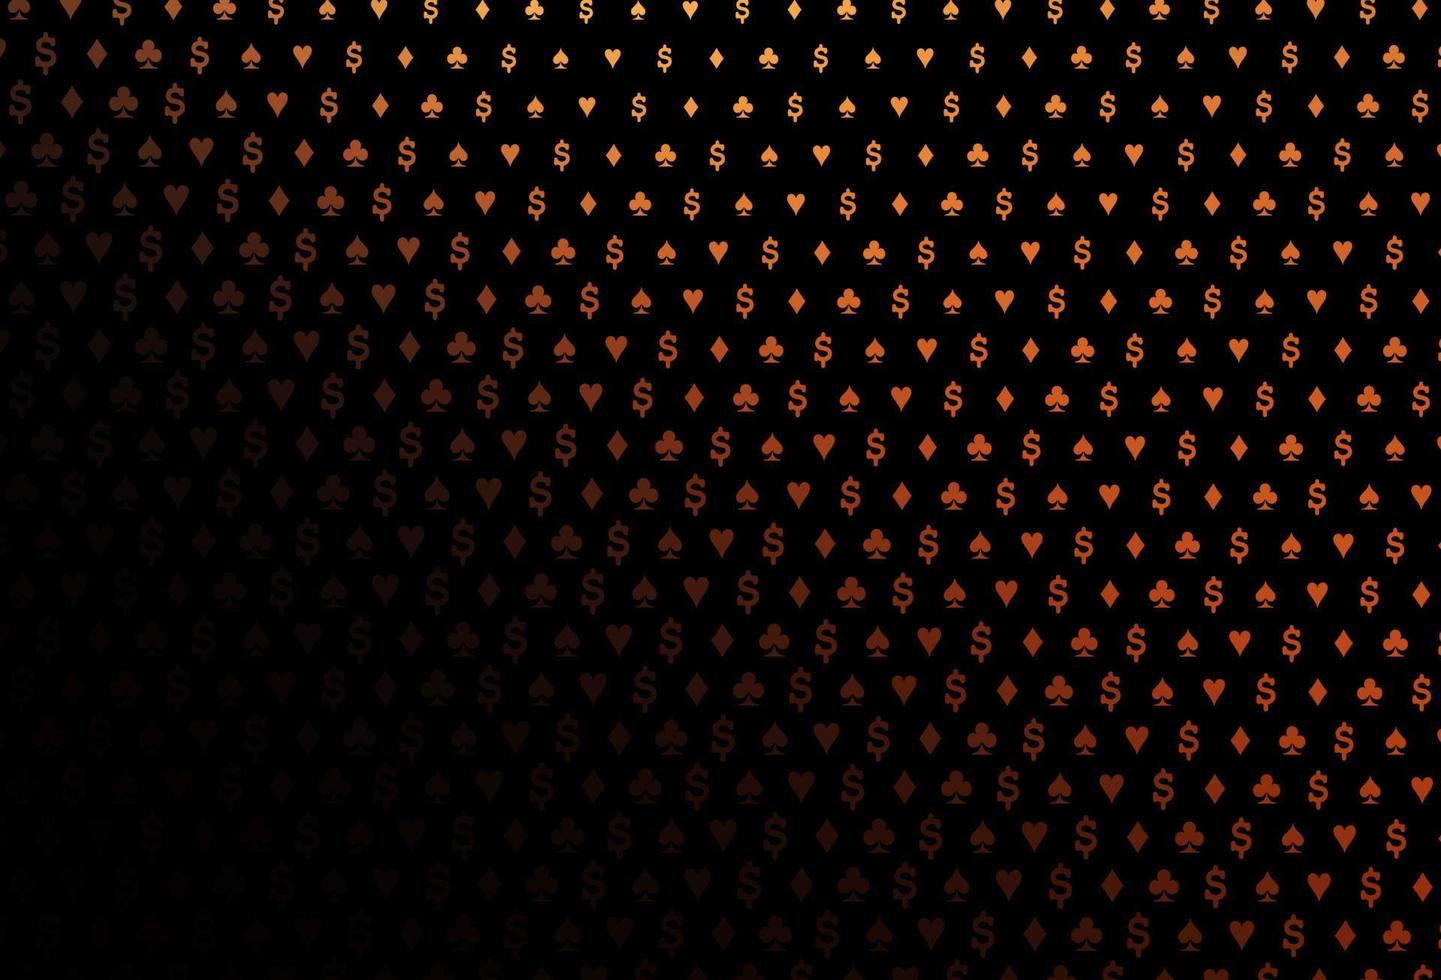 modelo de vetor laranja escuro com símbolos de pôquer.